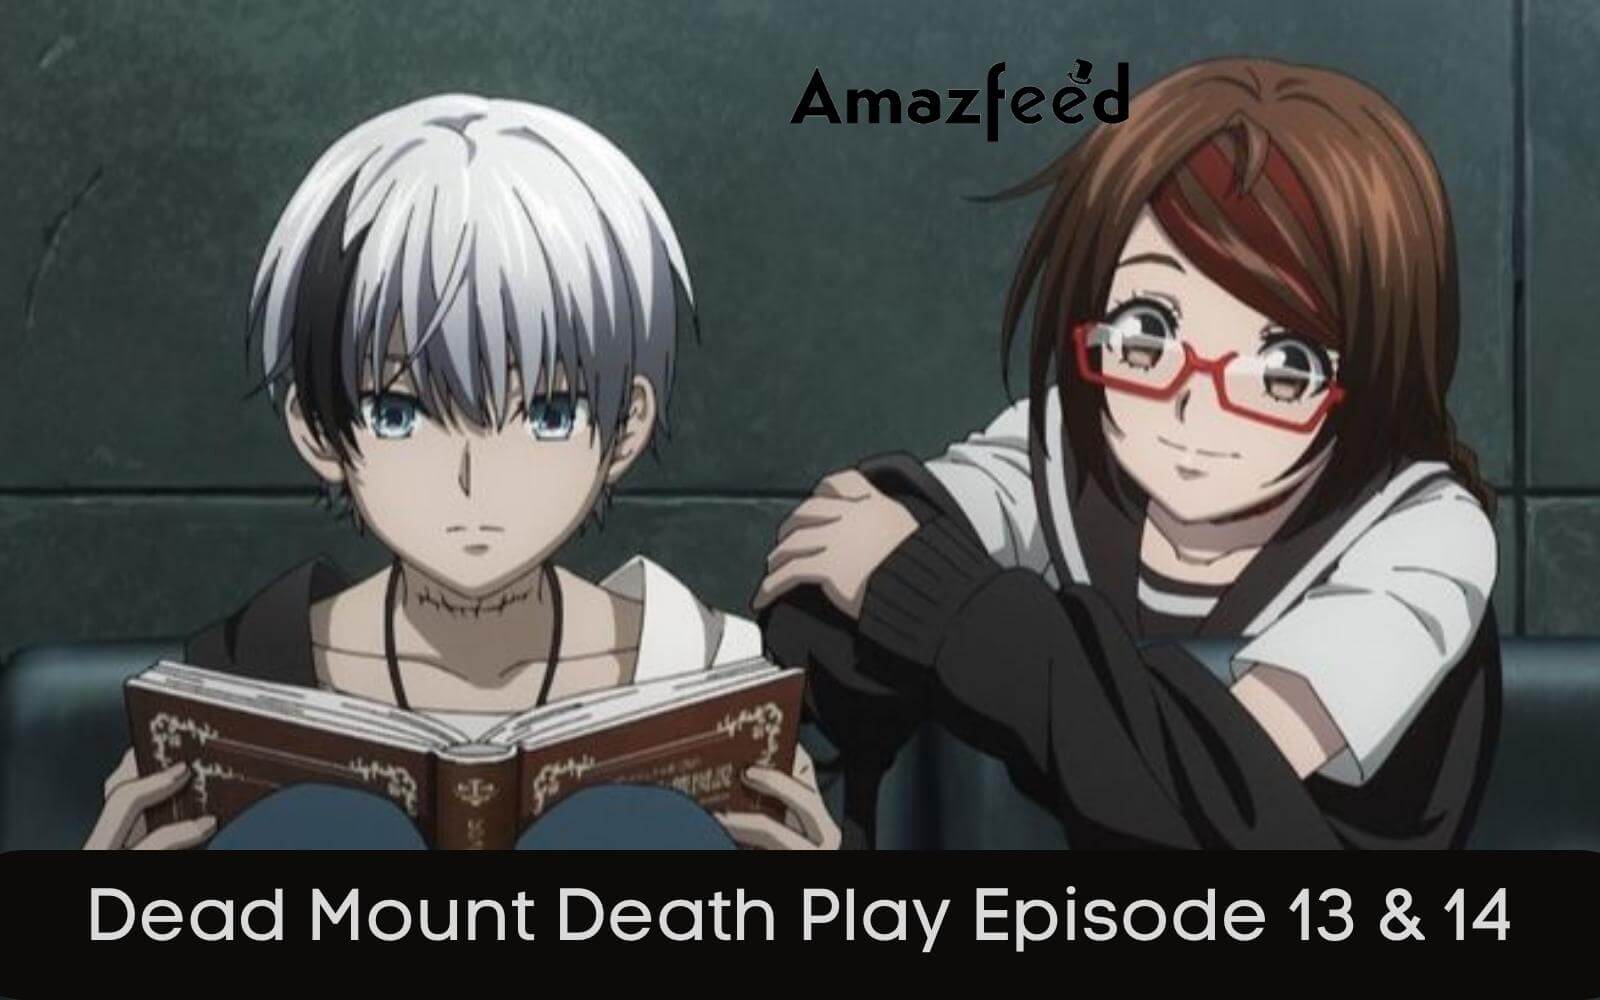 Dead Mount Death Play Season 2: In Production! Release Date